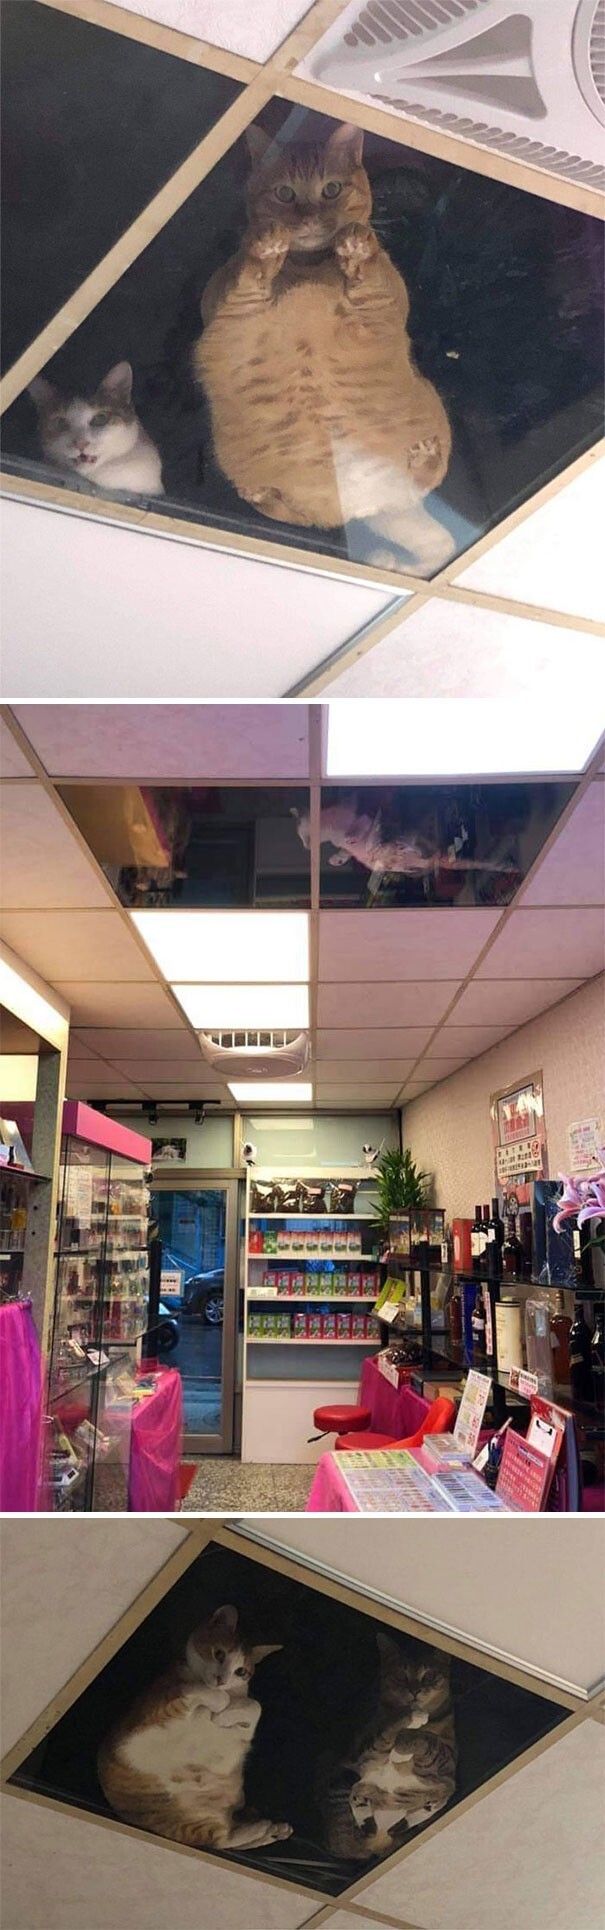 1. Владелец магазина установил окна в потолке, чтобы кошки могли наблюдать за ним, пока он работает